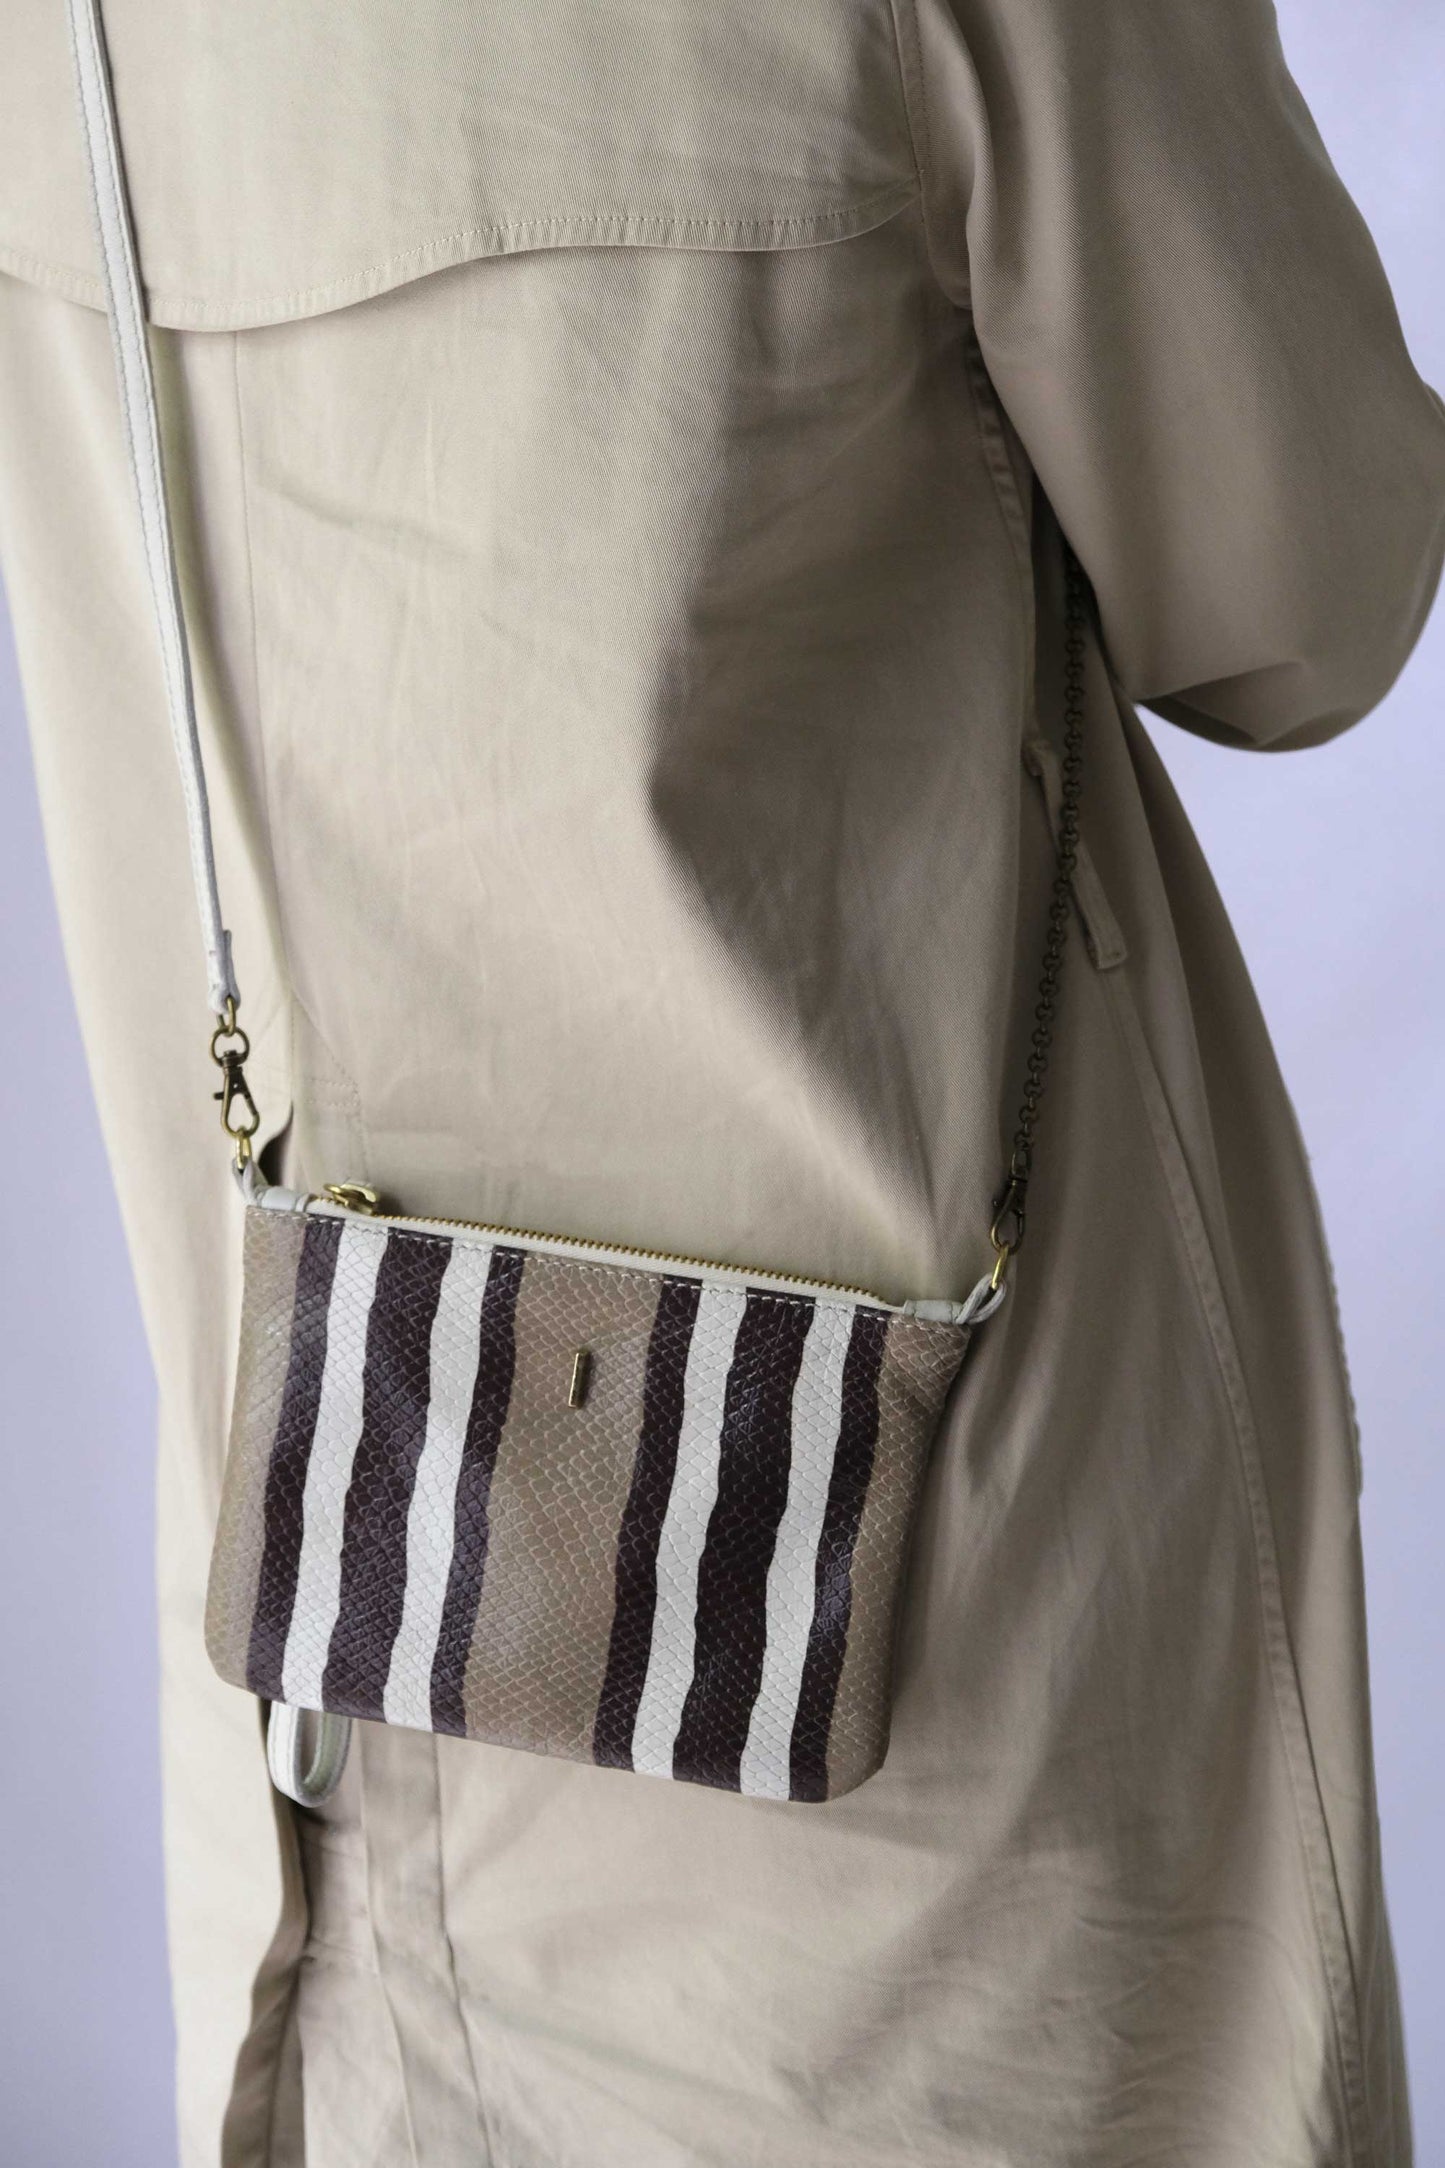 Tina pochette in stripe cream soft leather